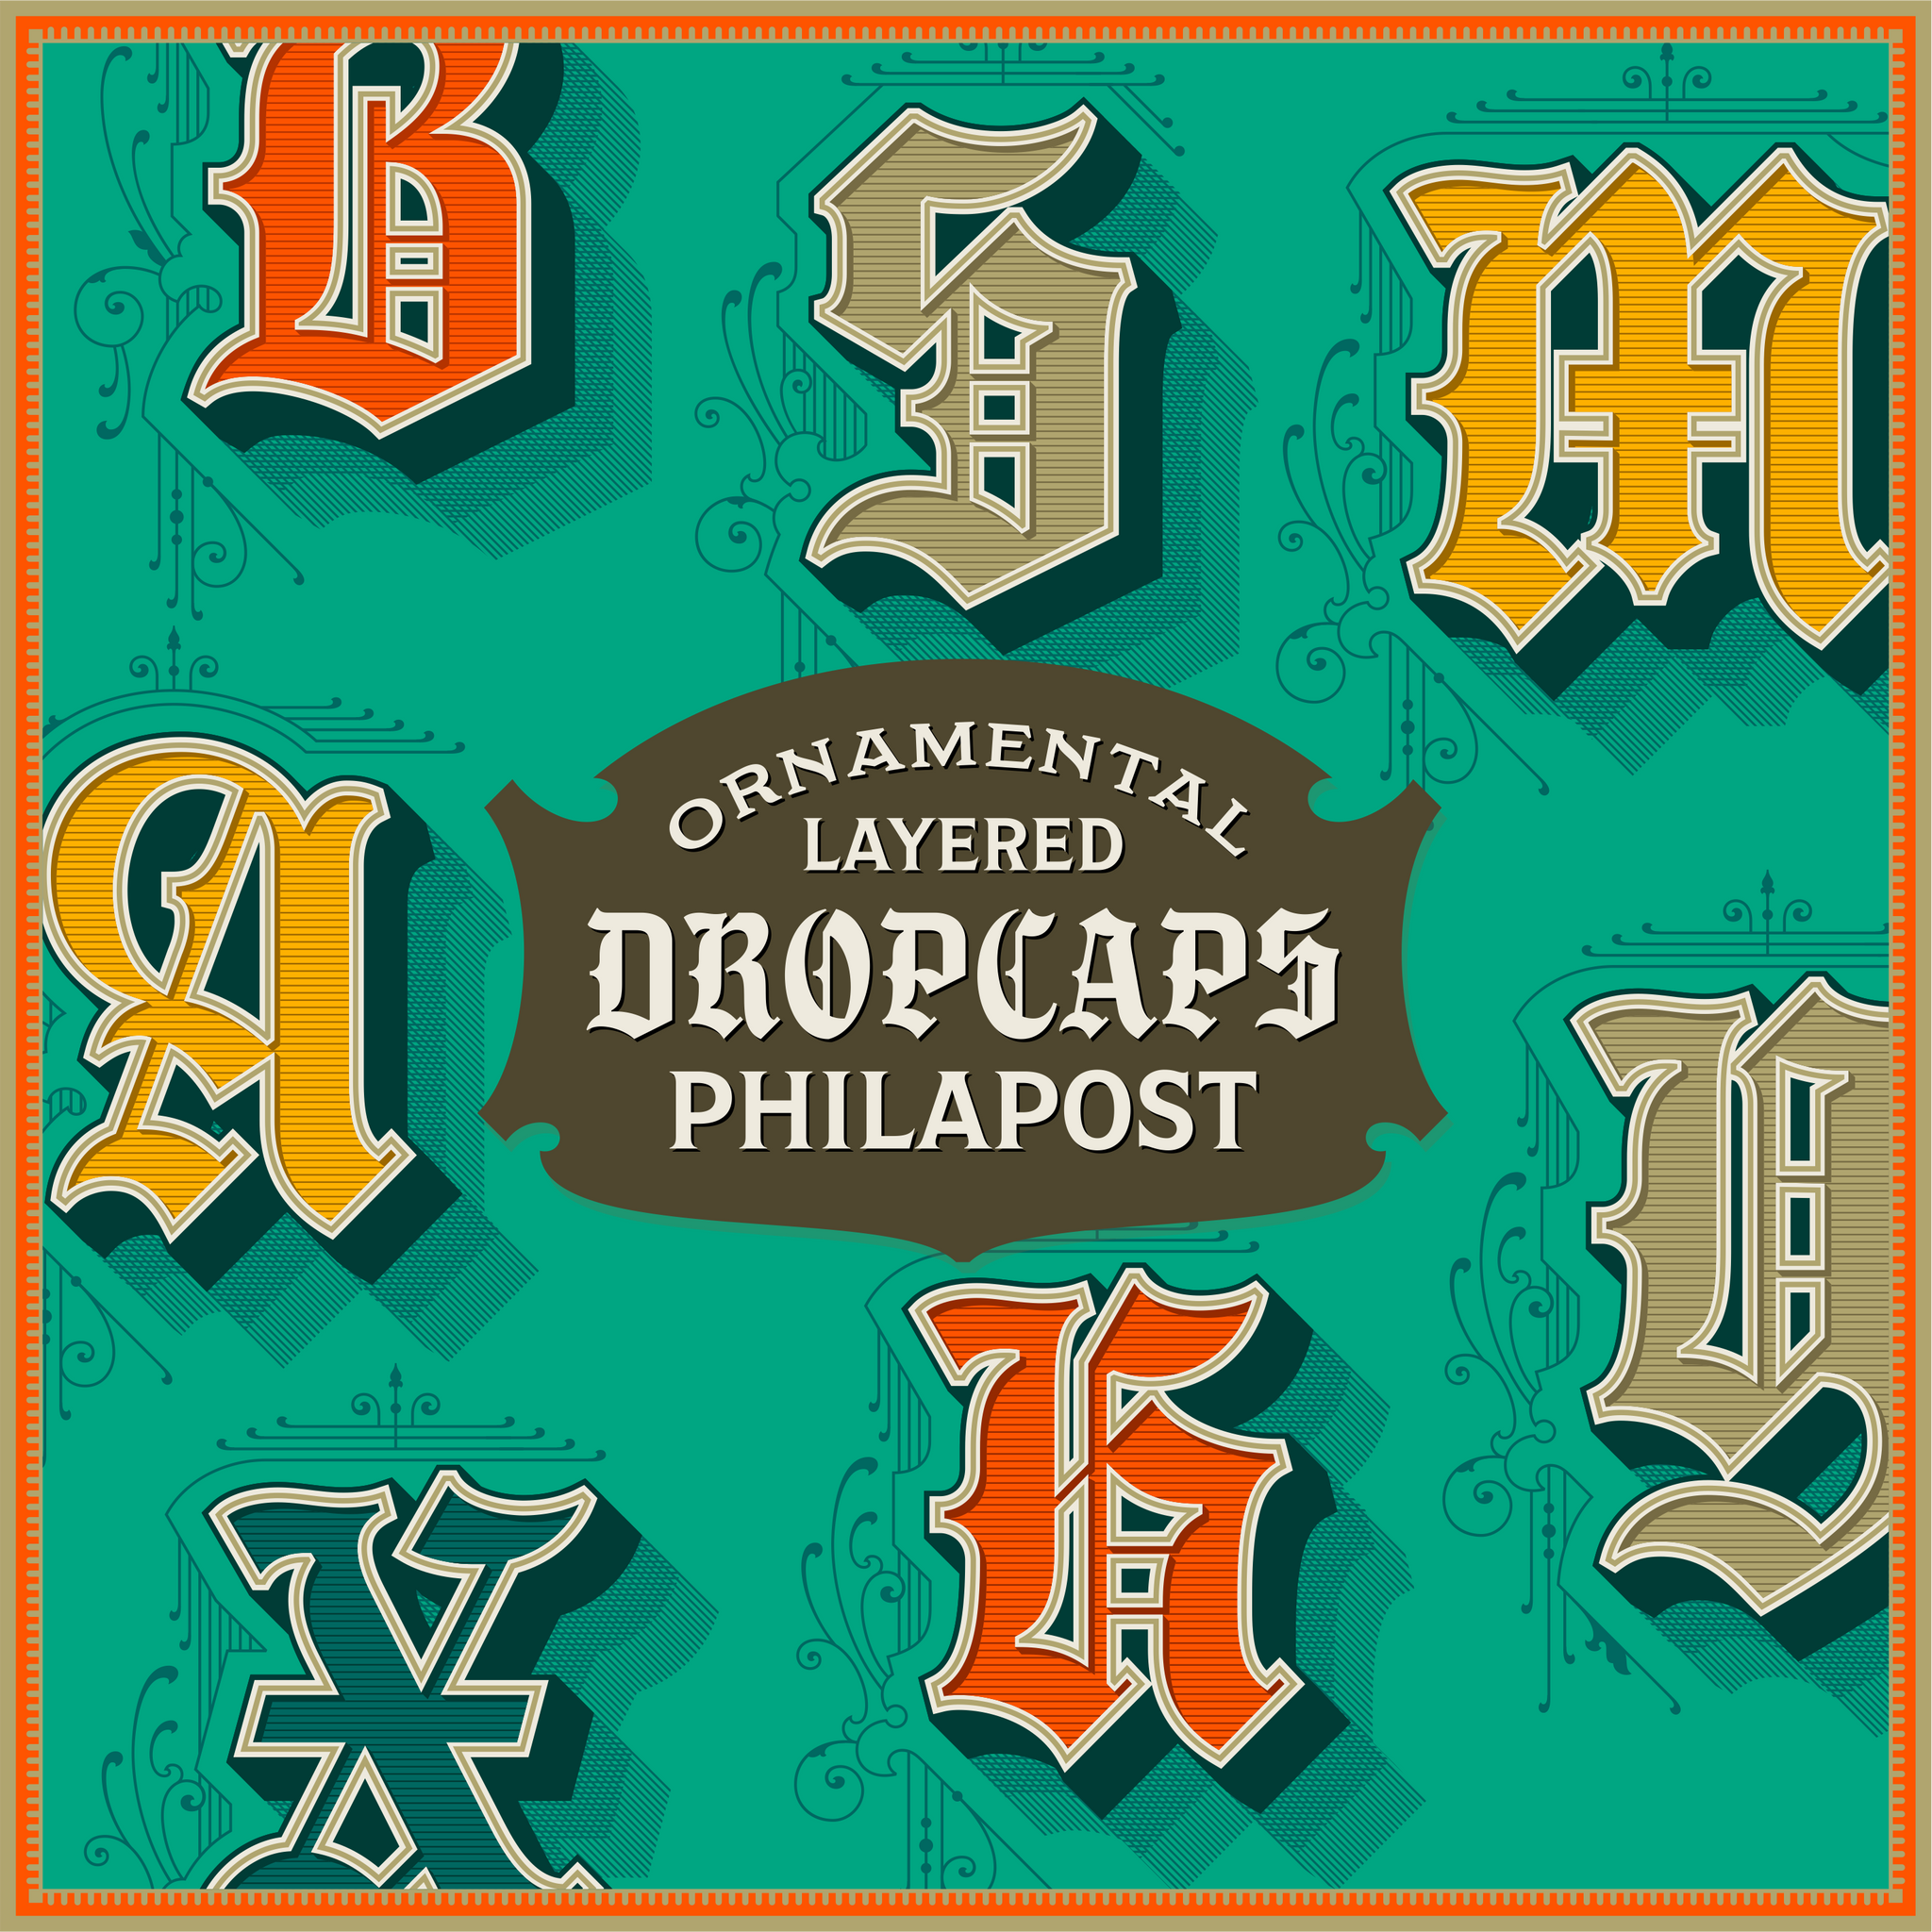 Philapost Dropcaps